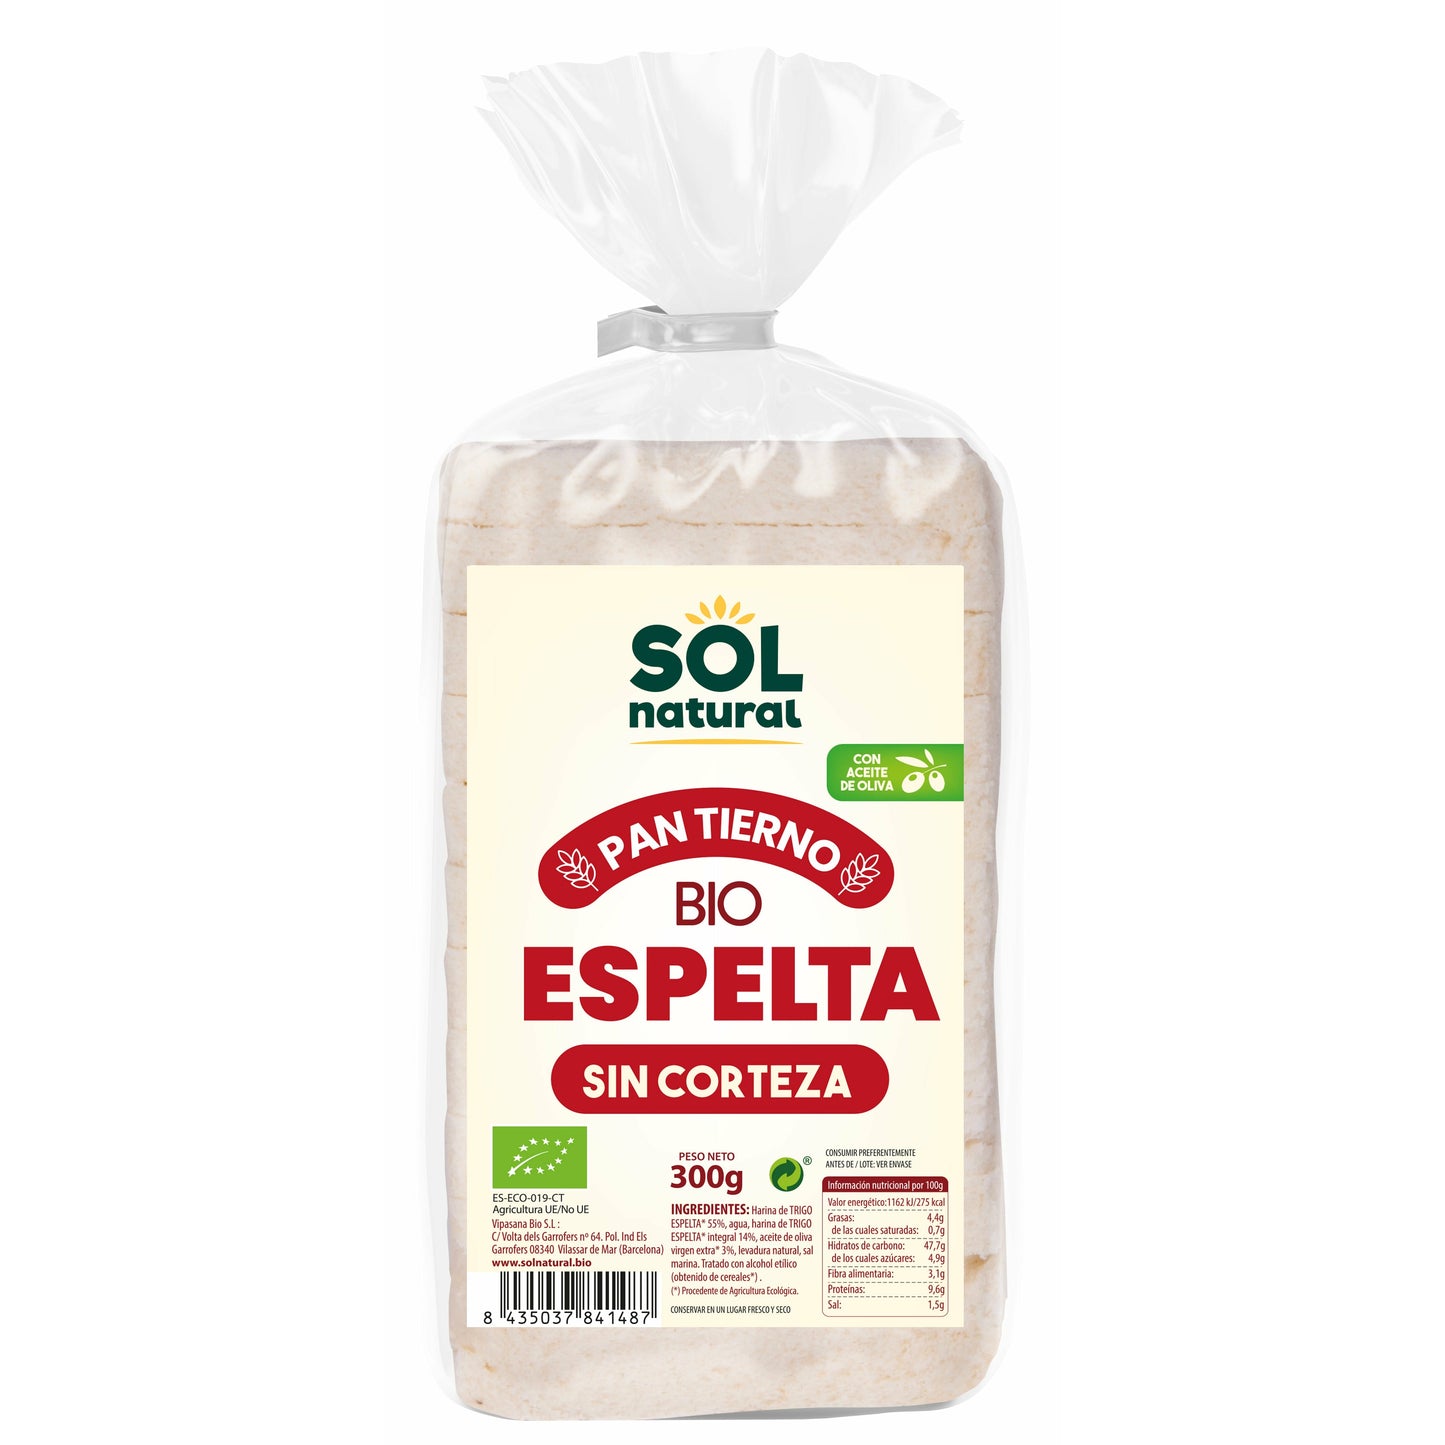 Pan Tierno de Espelta sin Corteza Bio 300 gr | Sol Natural - Dietetica Ferrer